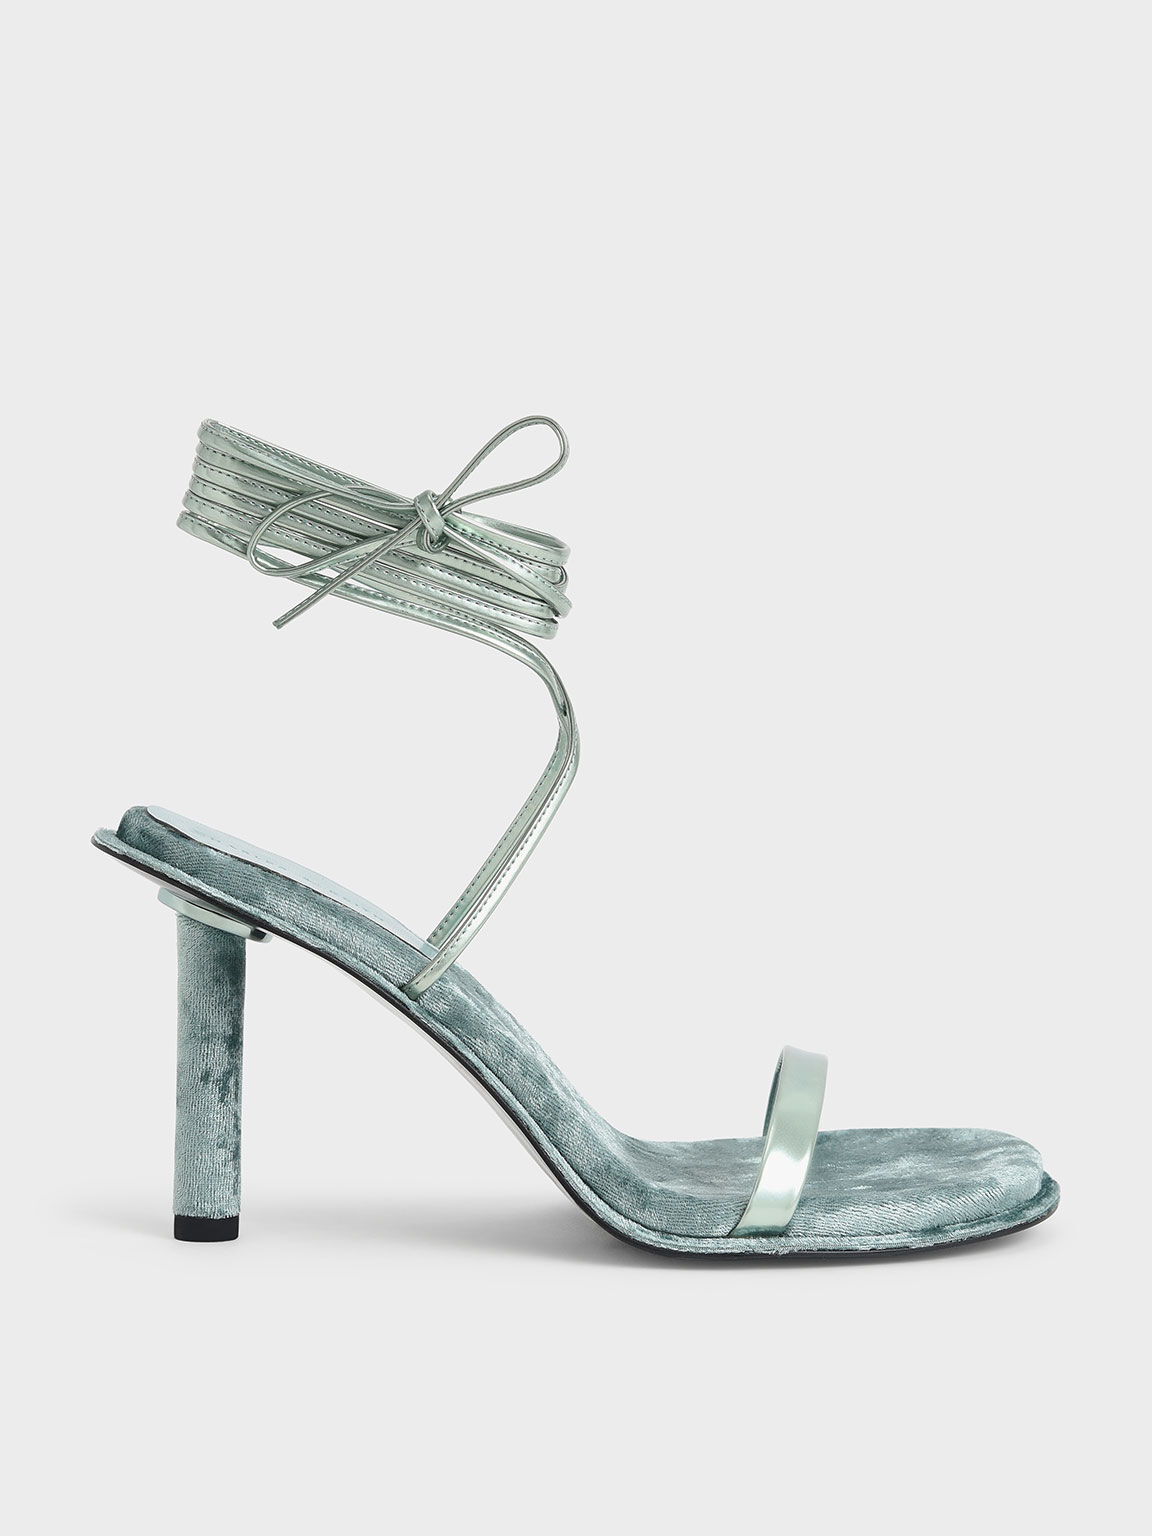 Kiera Metallic Tie-Around Stiletto Sandals, Sage Green, hi-res